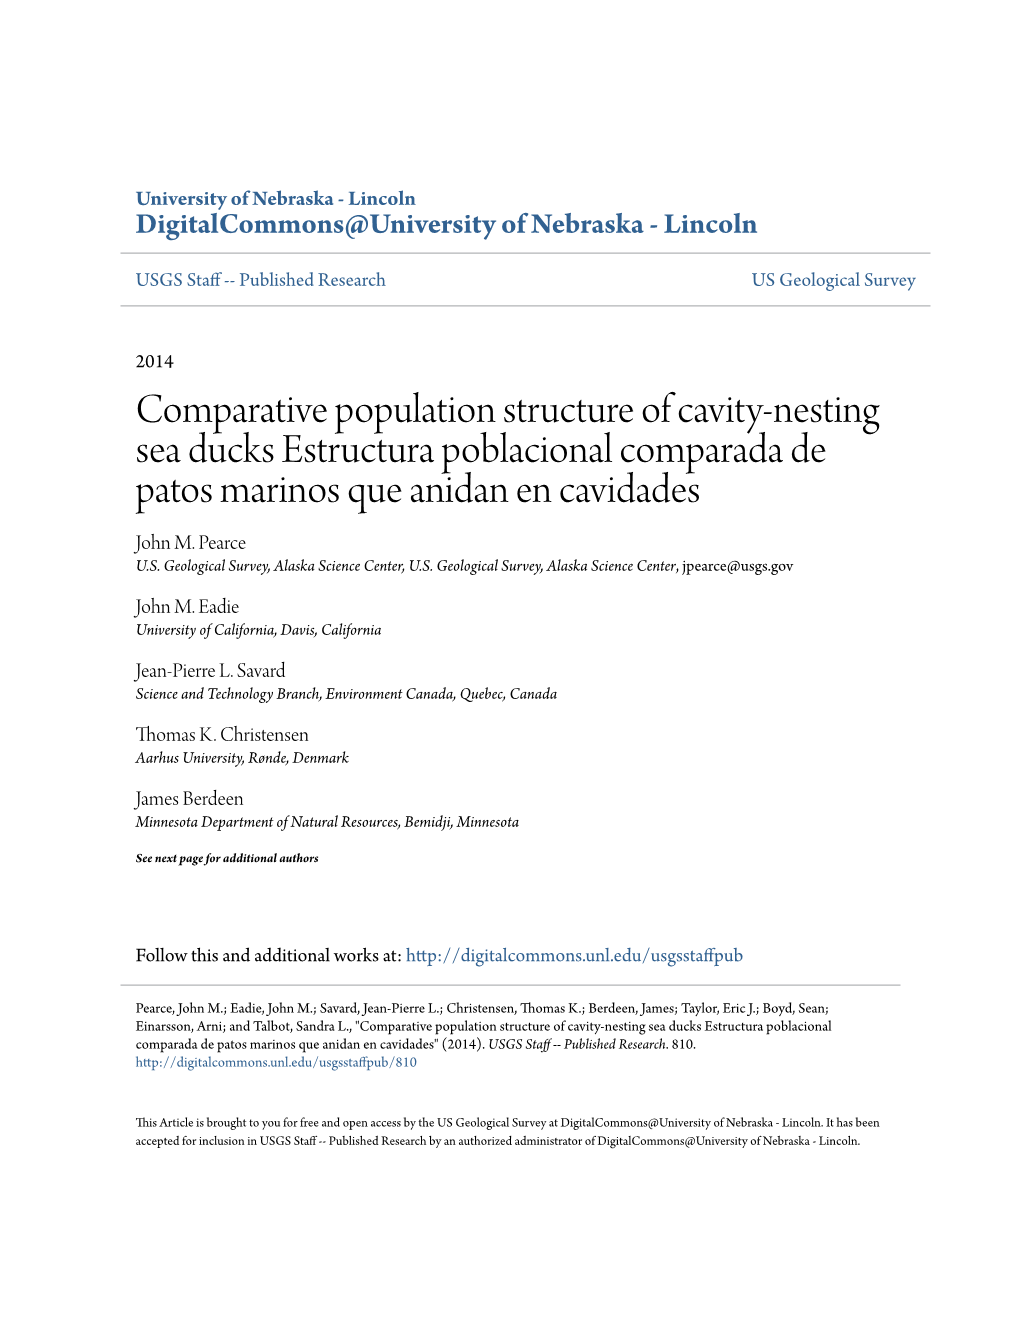 Comparative Population Structure of Cavity-Nesting Sea Ducks Estructura Poblacional Comparada De Patos Marinos Que Anidan En Cavidades John M